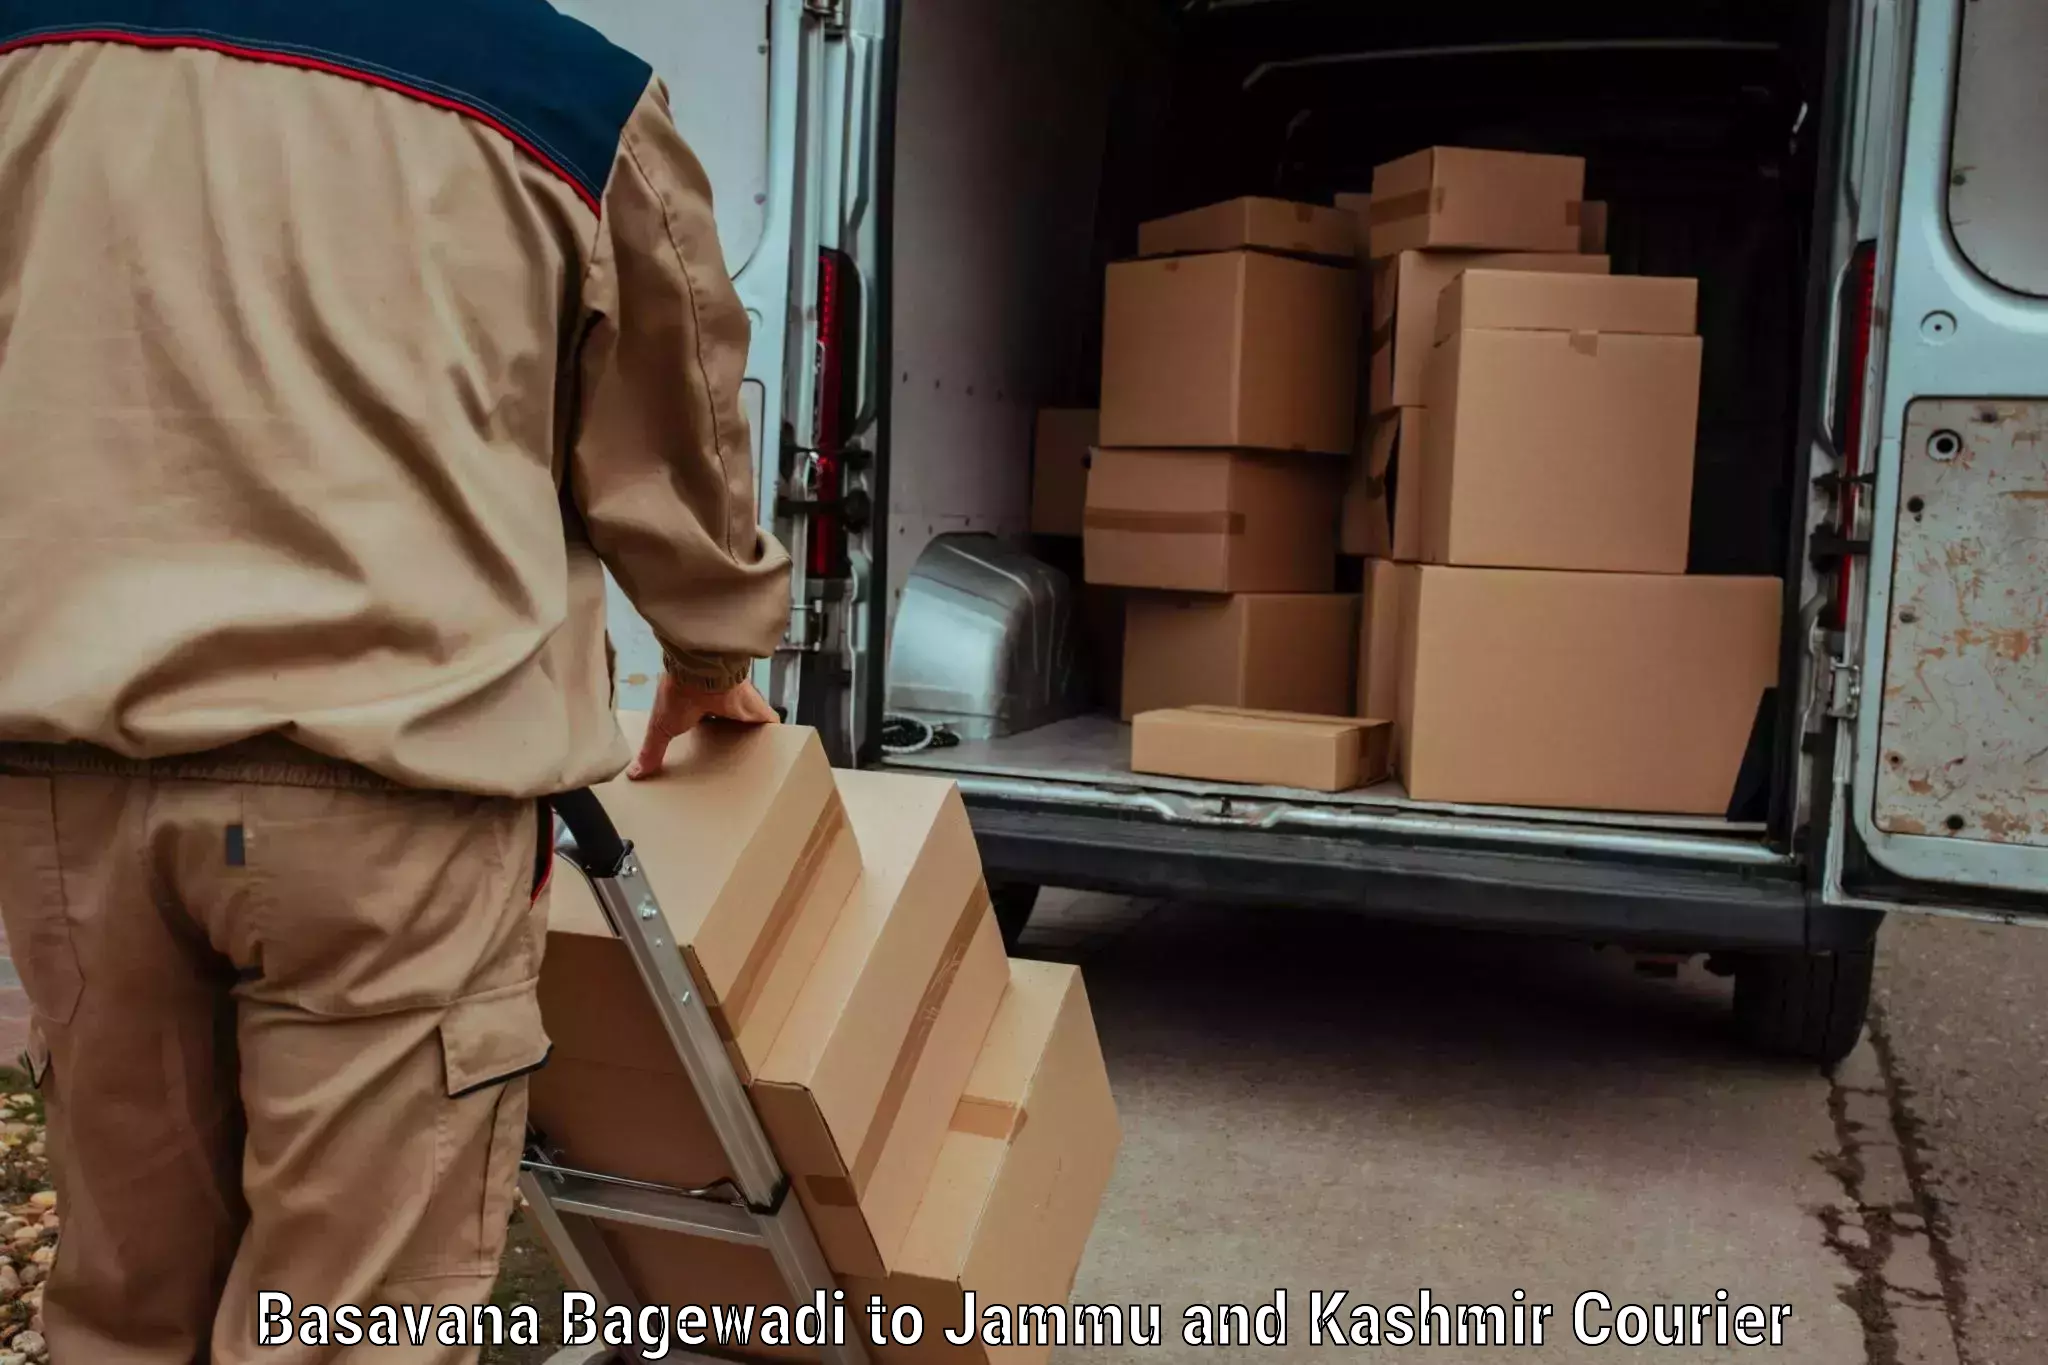 Door-to-door freight service Basavana Bagewadi to Leh